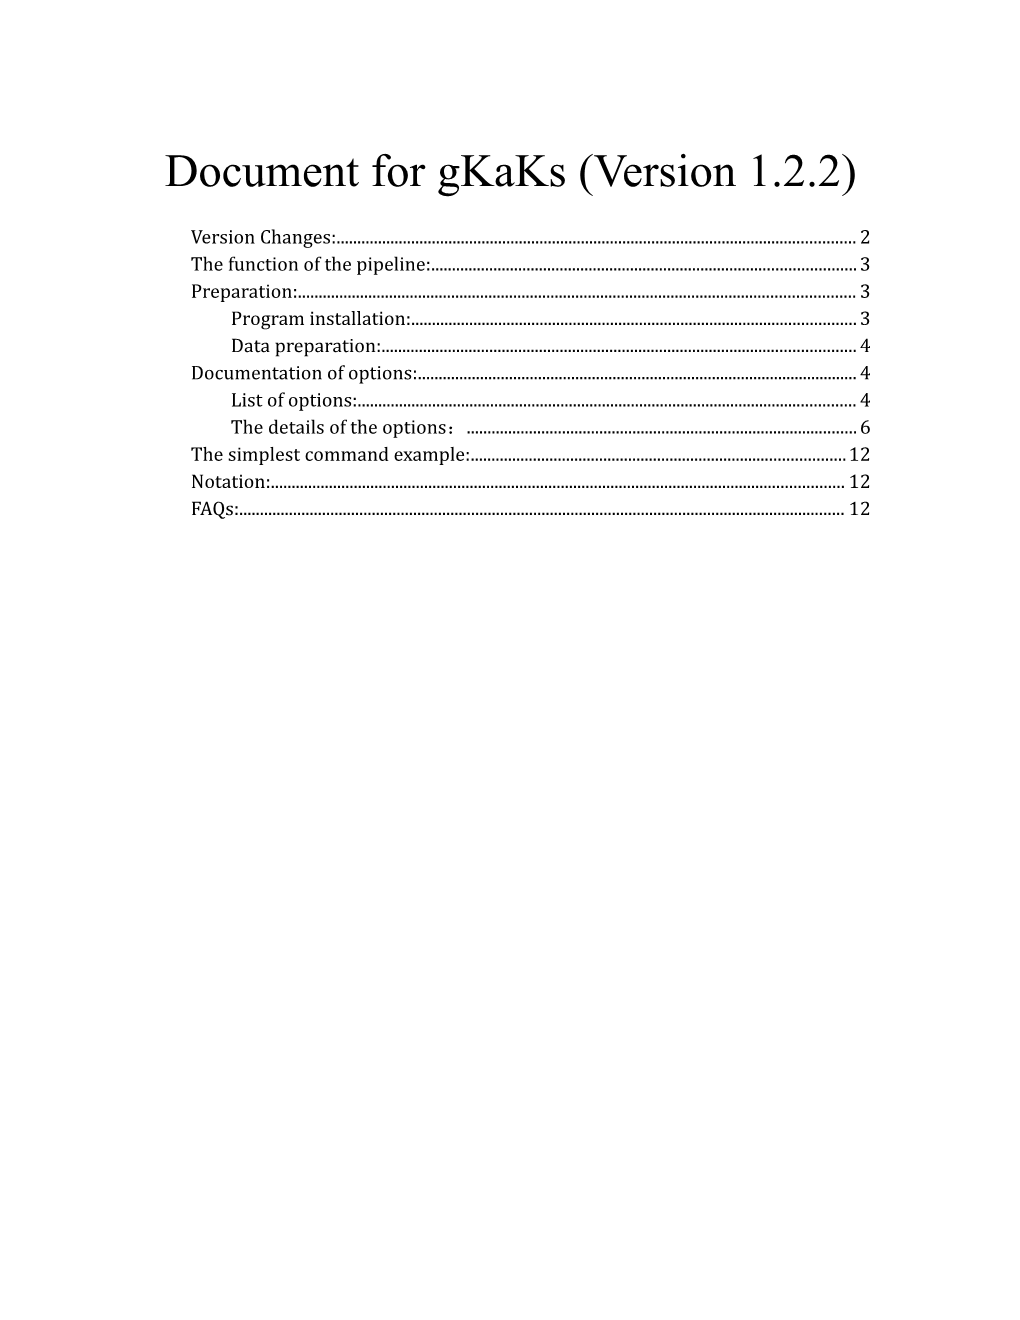 Document for Gkaks (Version 1.2.2)